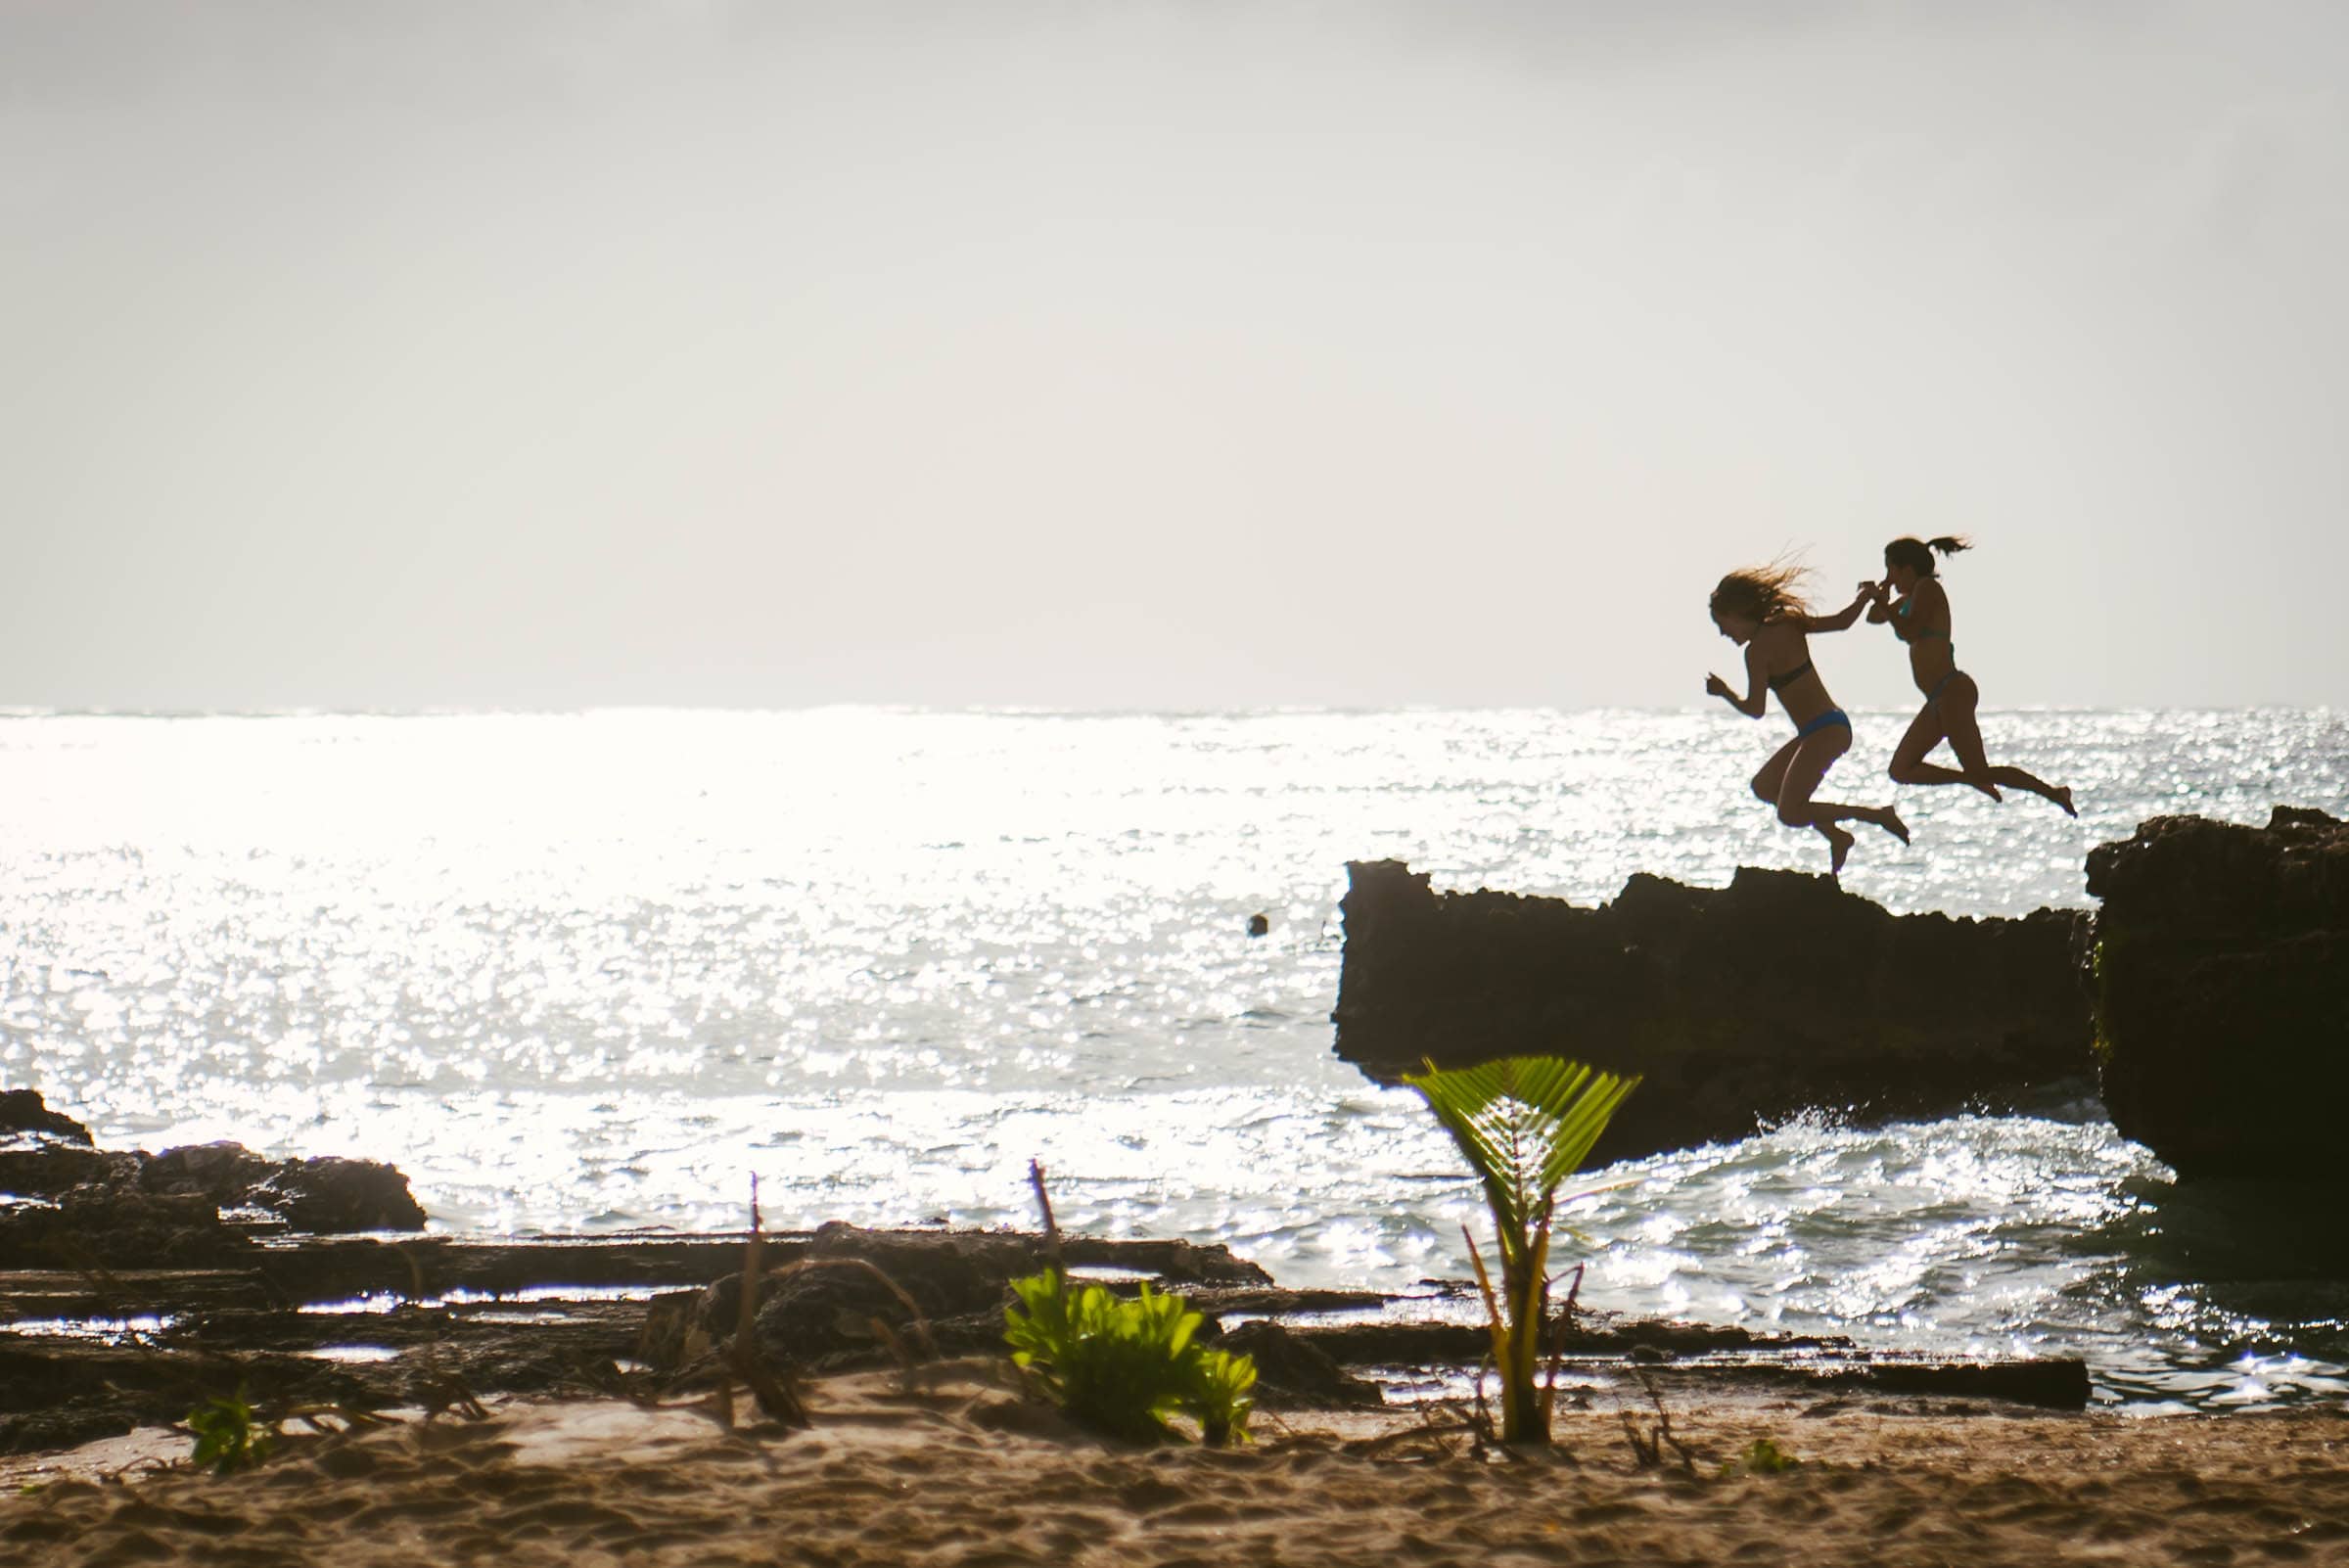 Beach Girls Jumping, Grand Cayman by Patrick Bennett